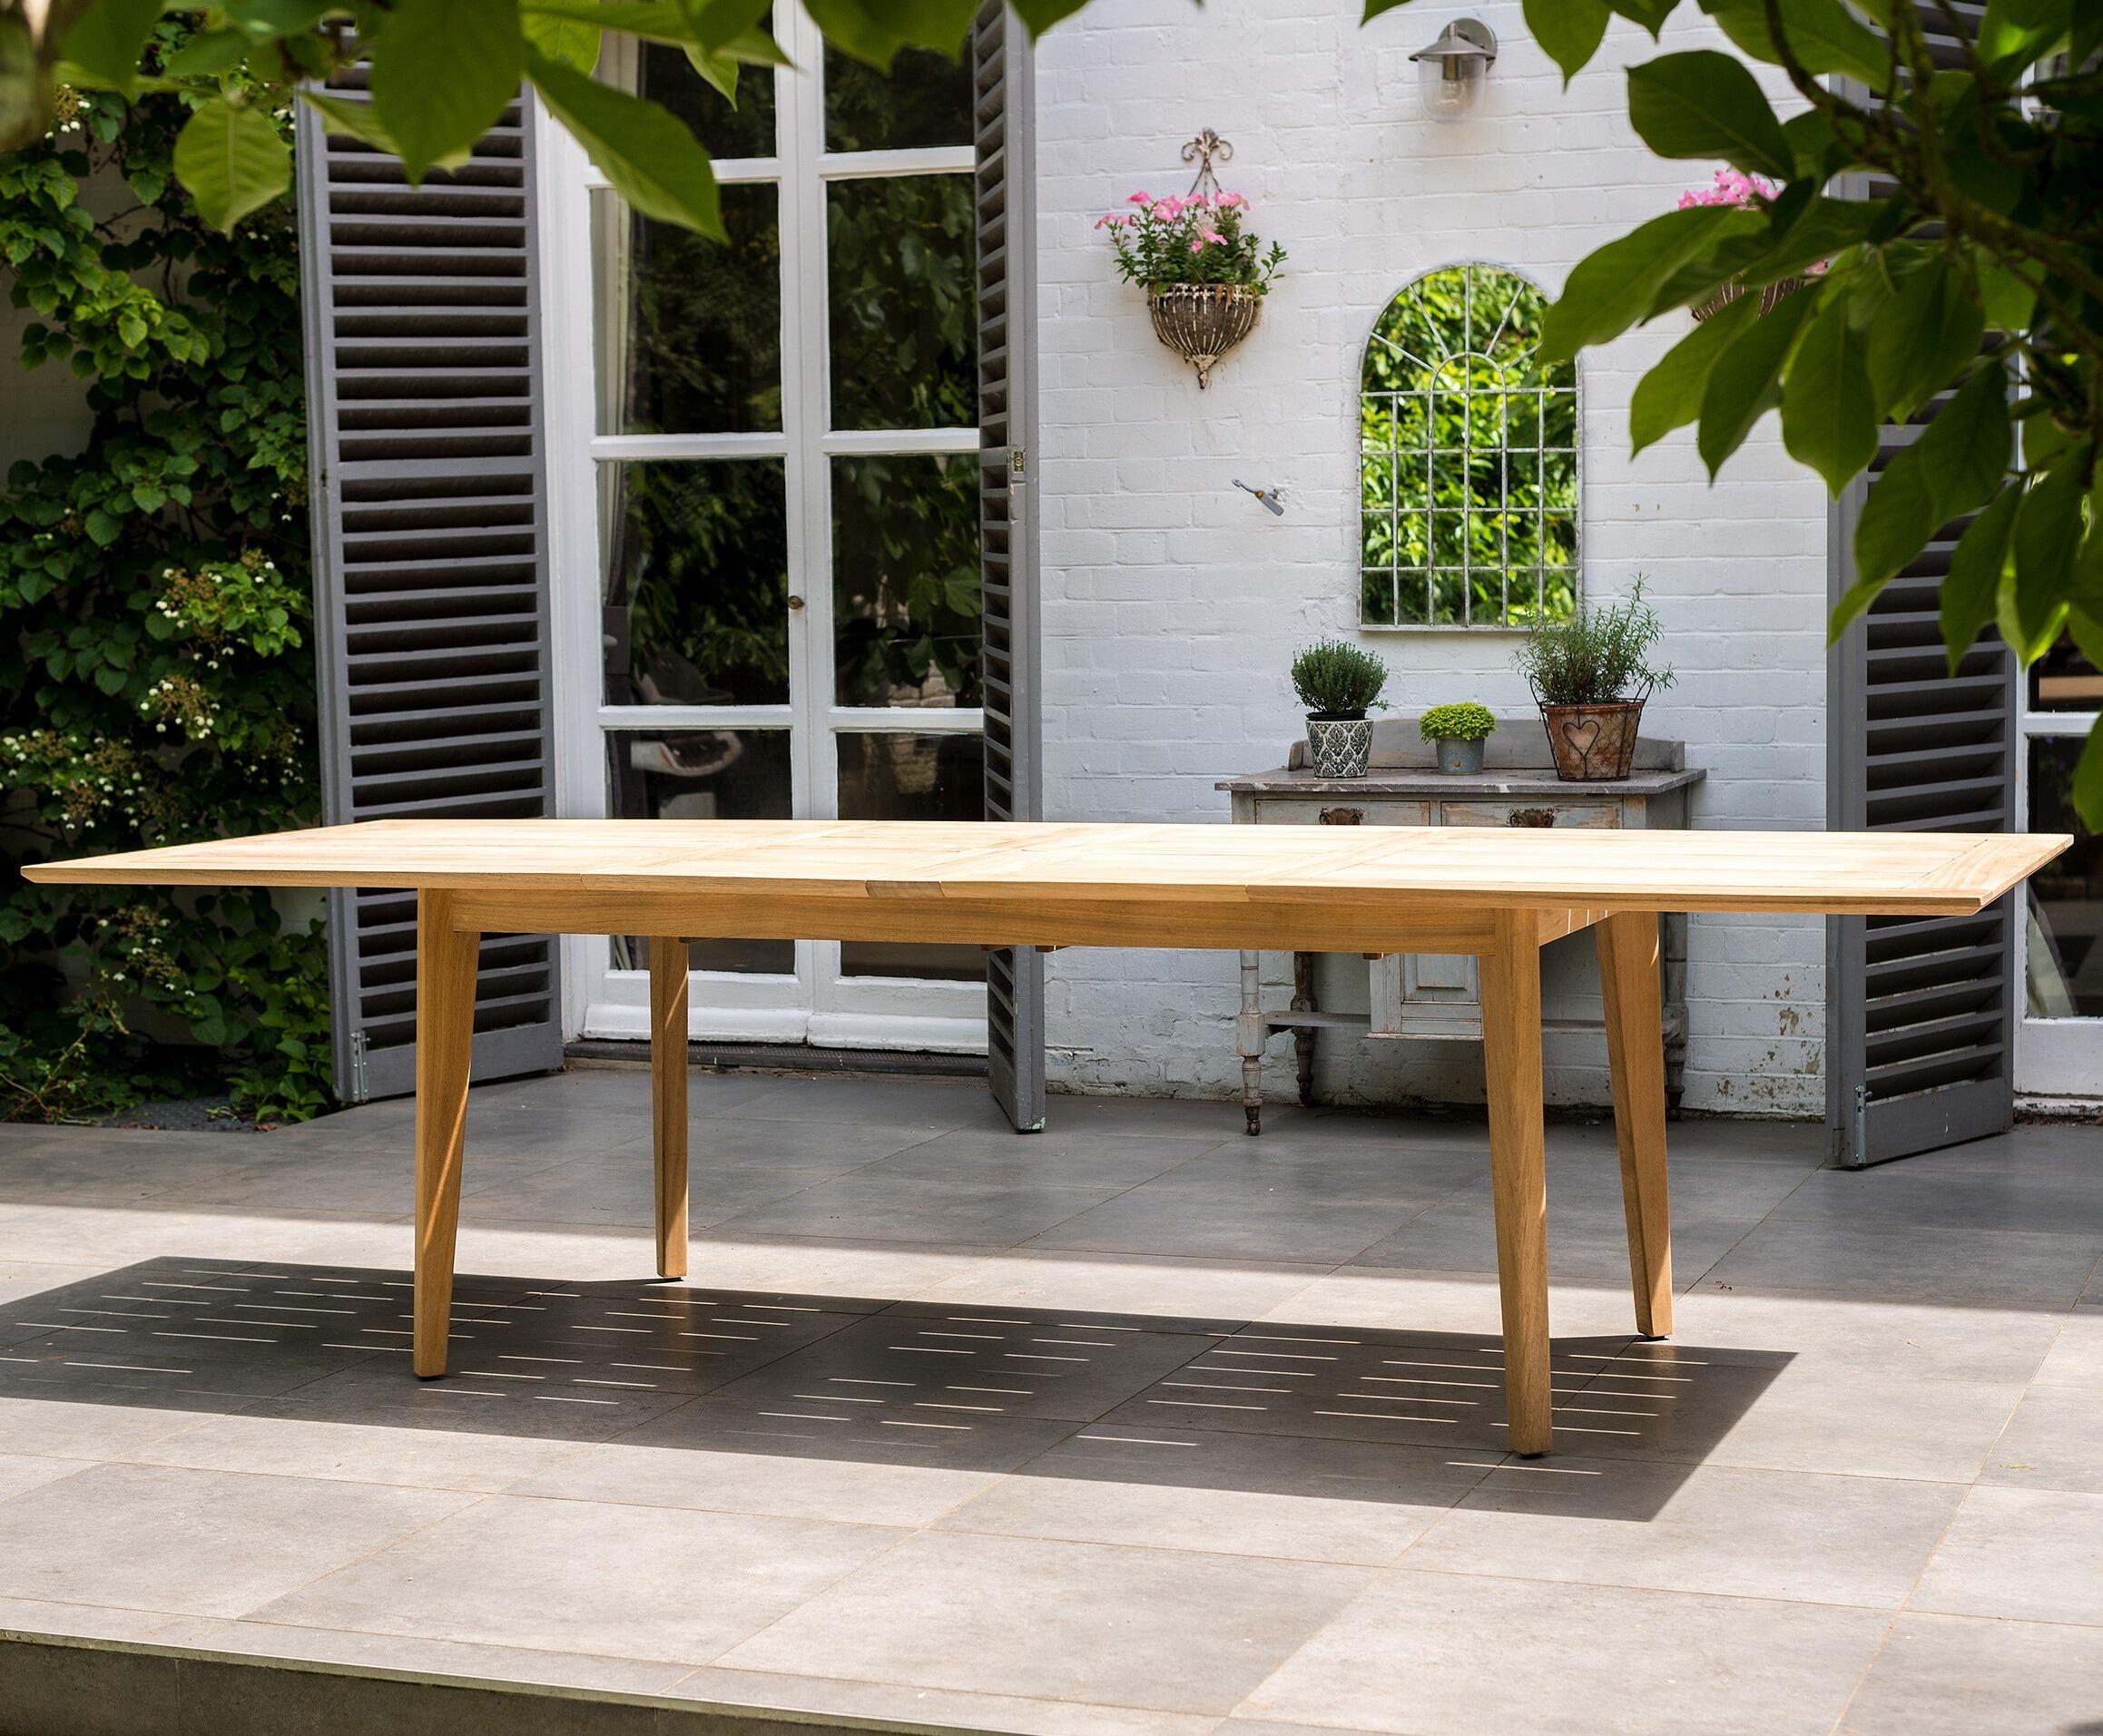 extending garden dining table full 2.9 metre length modern roble hardwood table